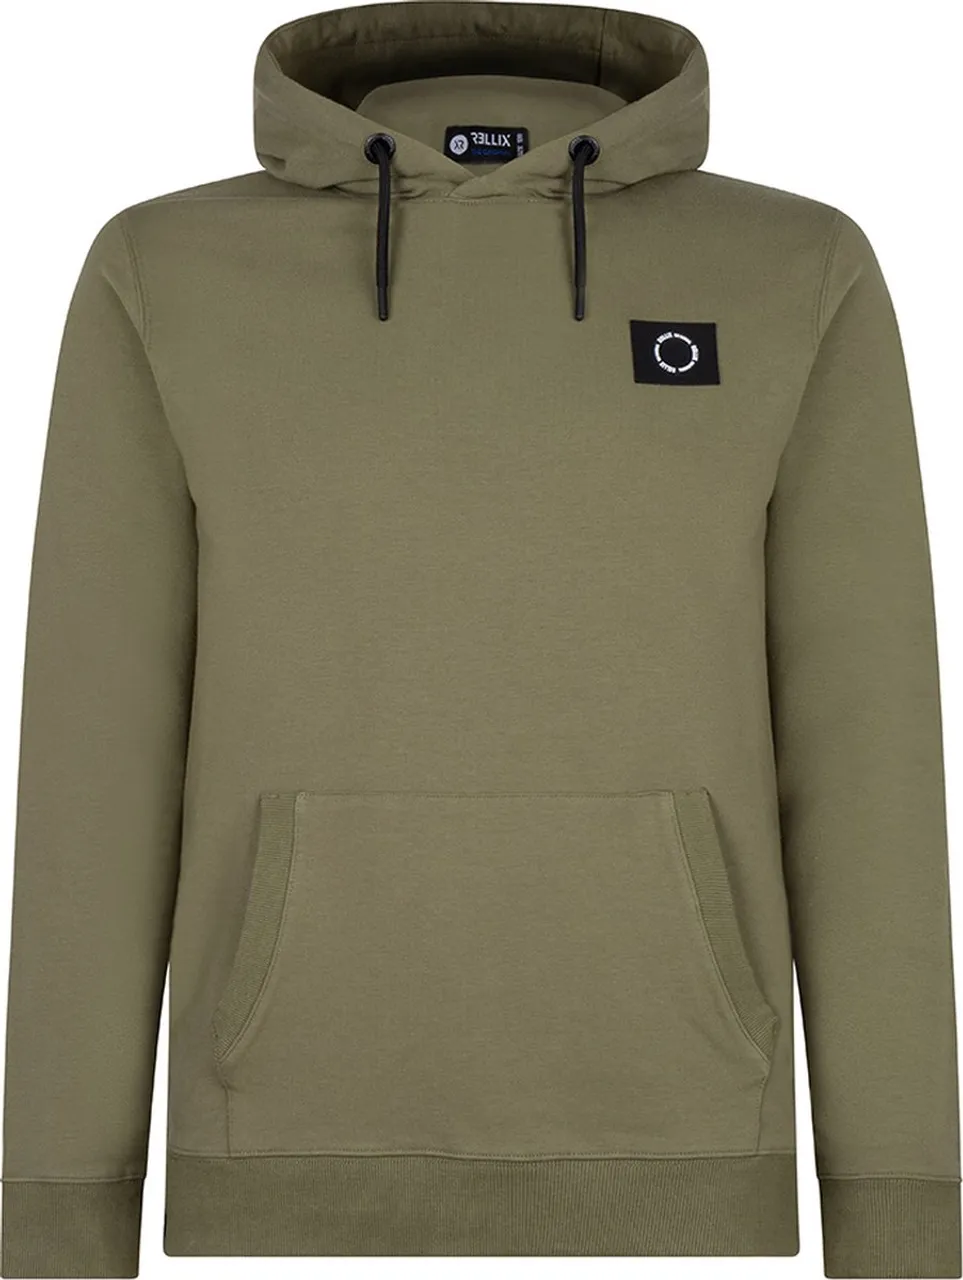 Jongens hoodie badge - Donker army groen